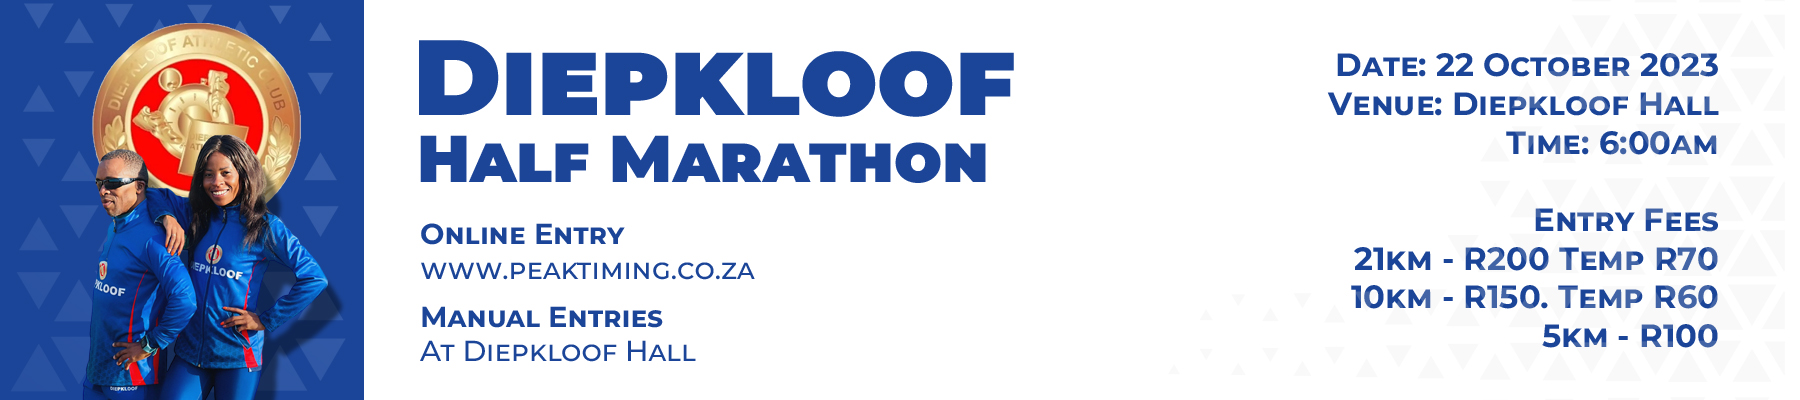 Diepkloof Half Marathon 2023 | Online Entries